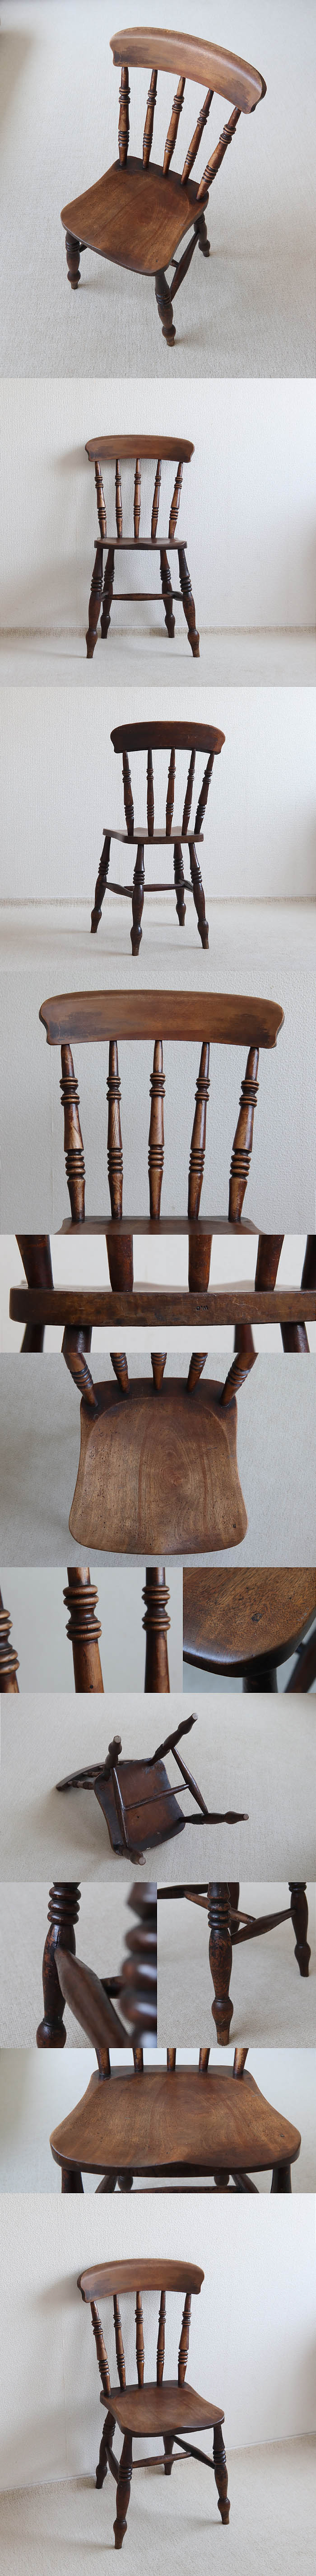 イギリス アンティーク キッチンチェア 木製椅子 カントリー 古木 店舗什器 家具 V-078